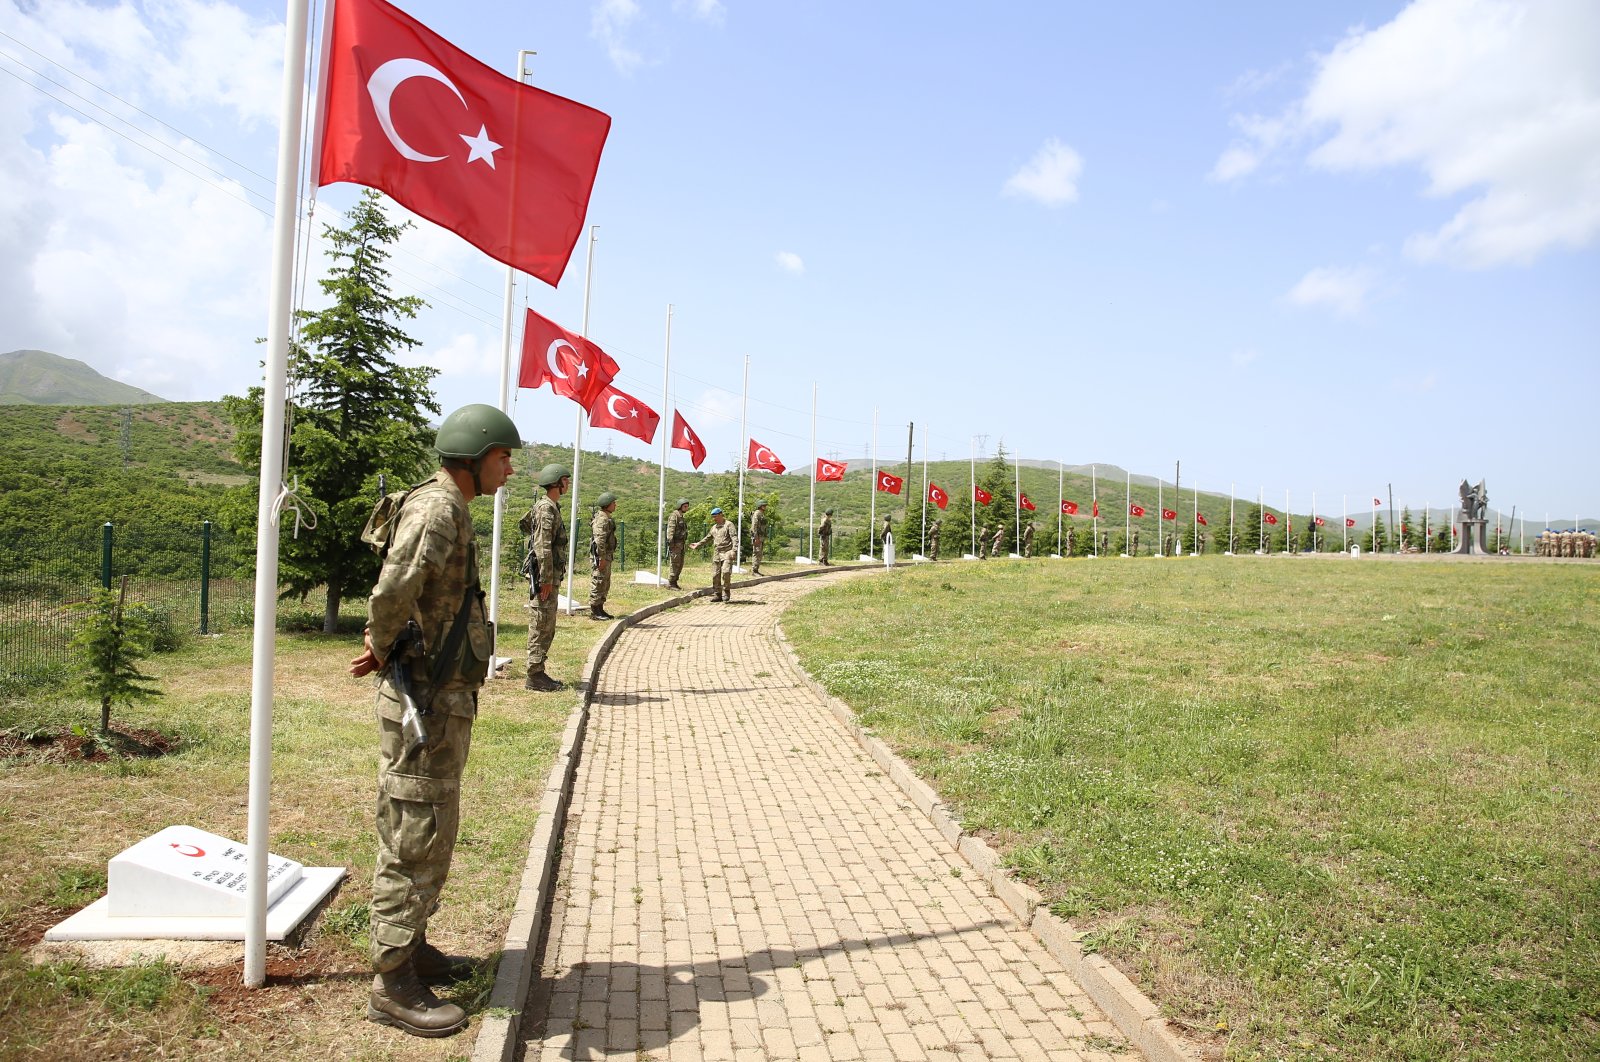 Layanan e-Govt Türkiye untuk memudahkan prosedur terkait militer